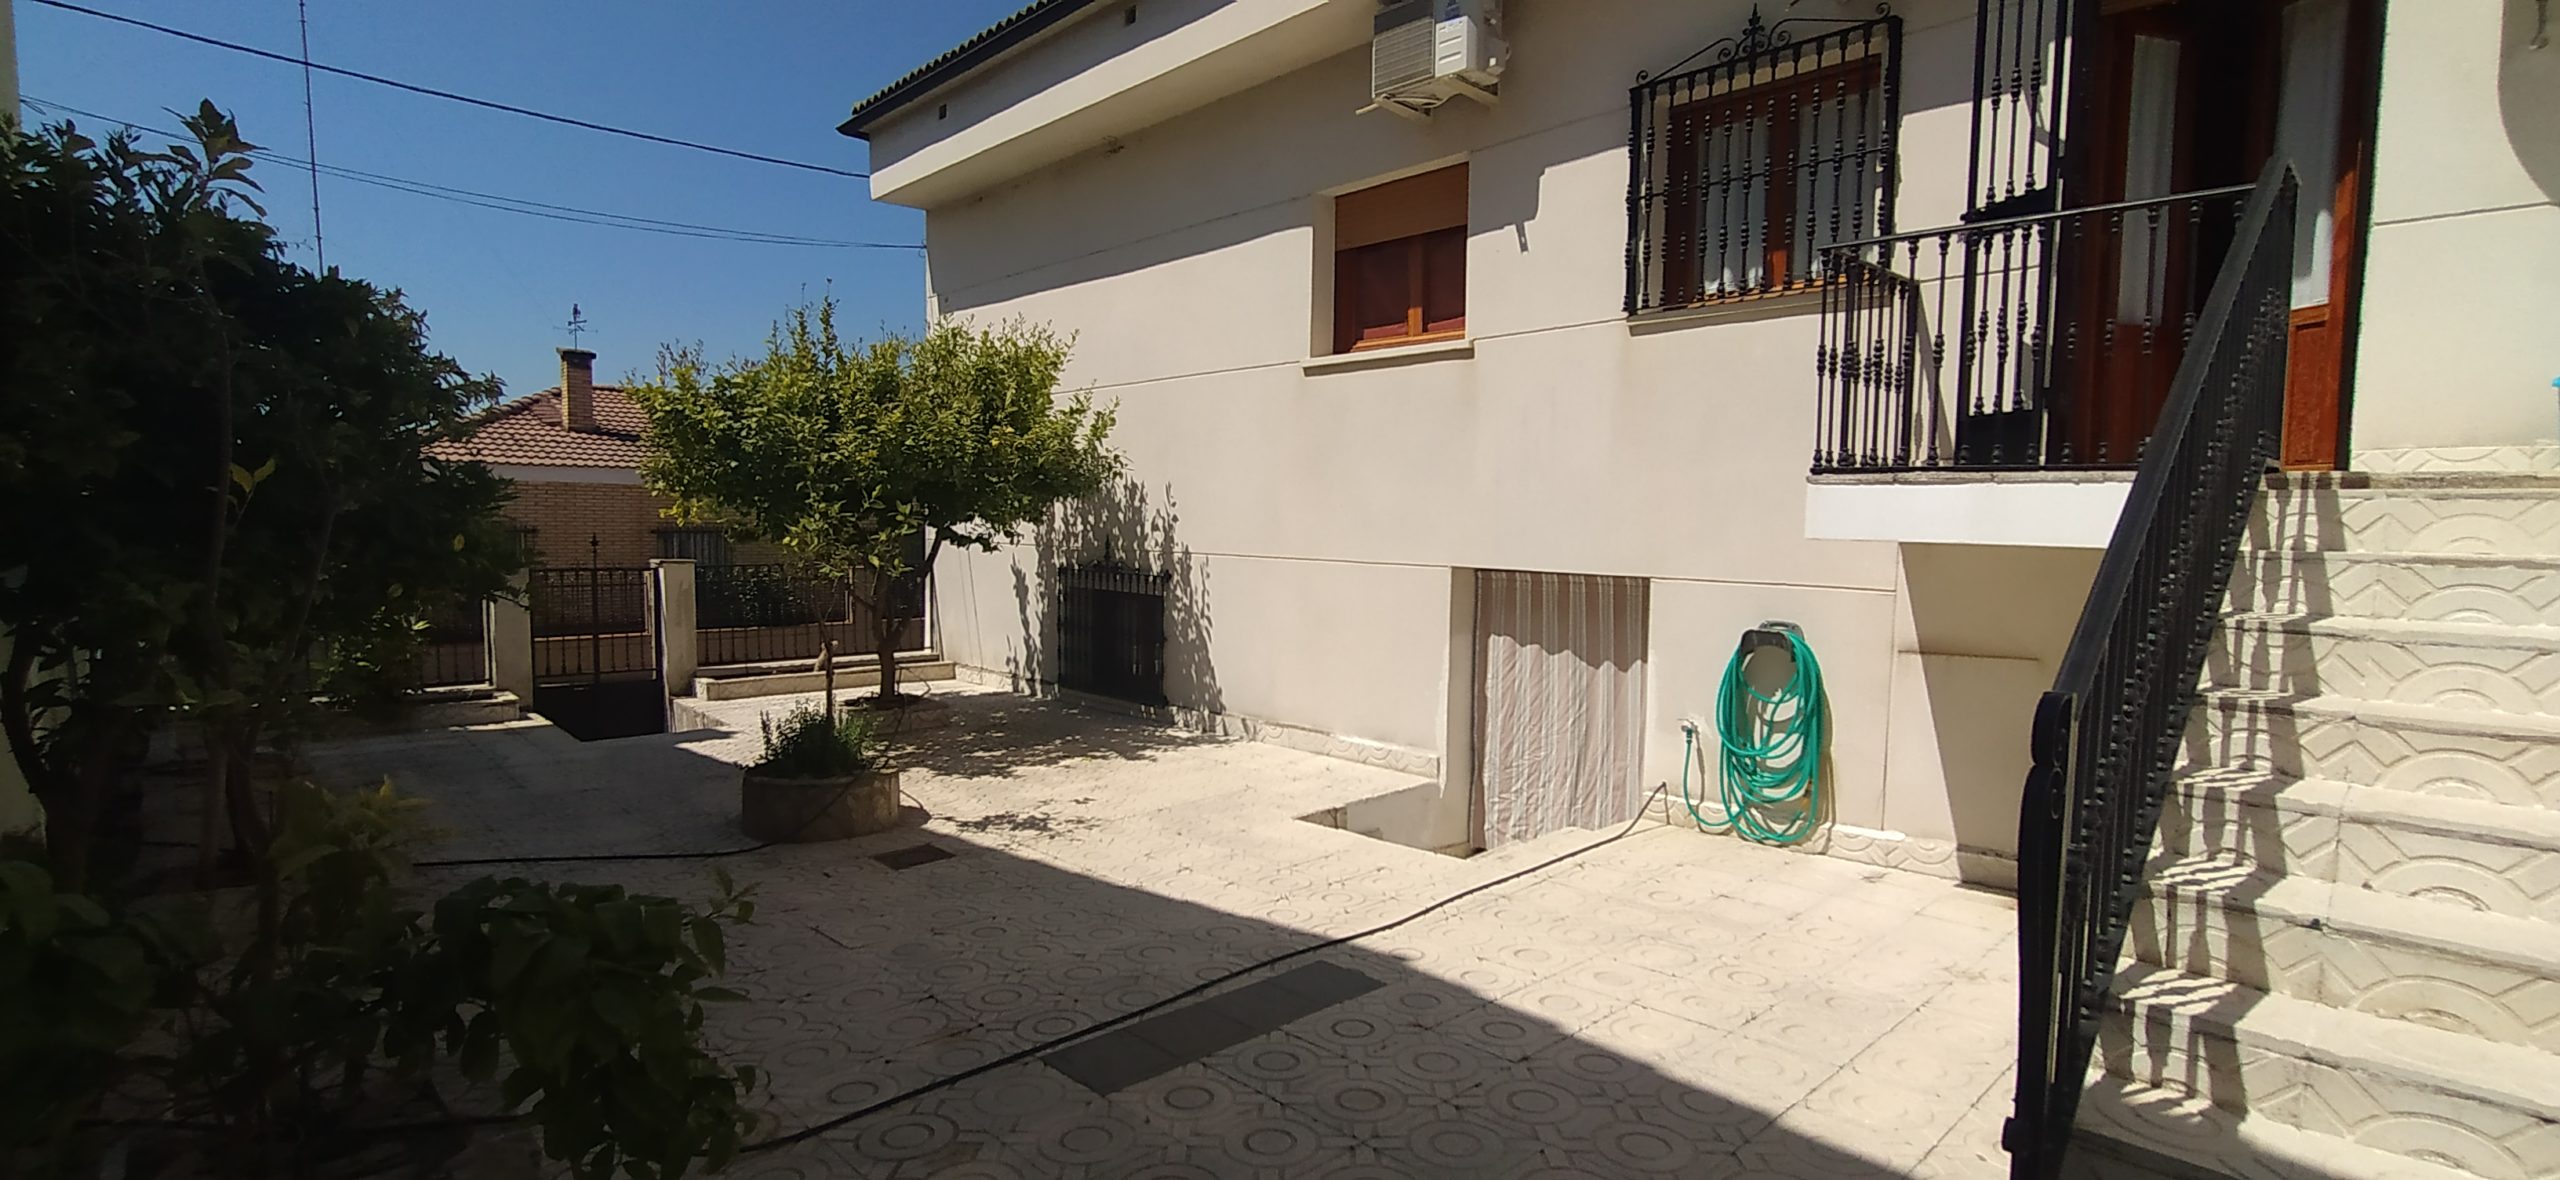 Casa en venta en Zarza la mayor, Cáceres MC1038